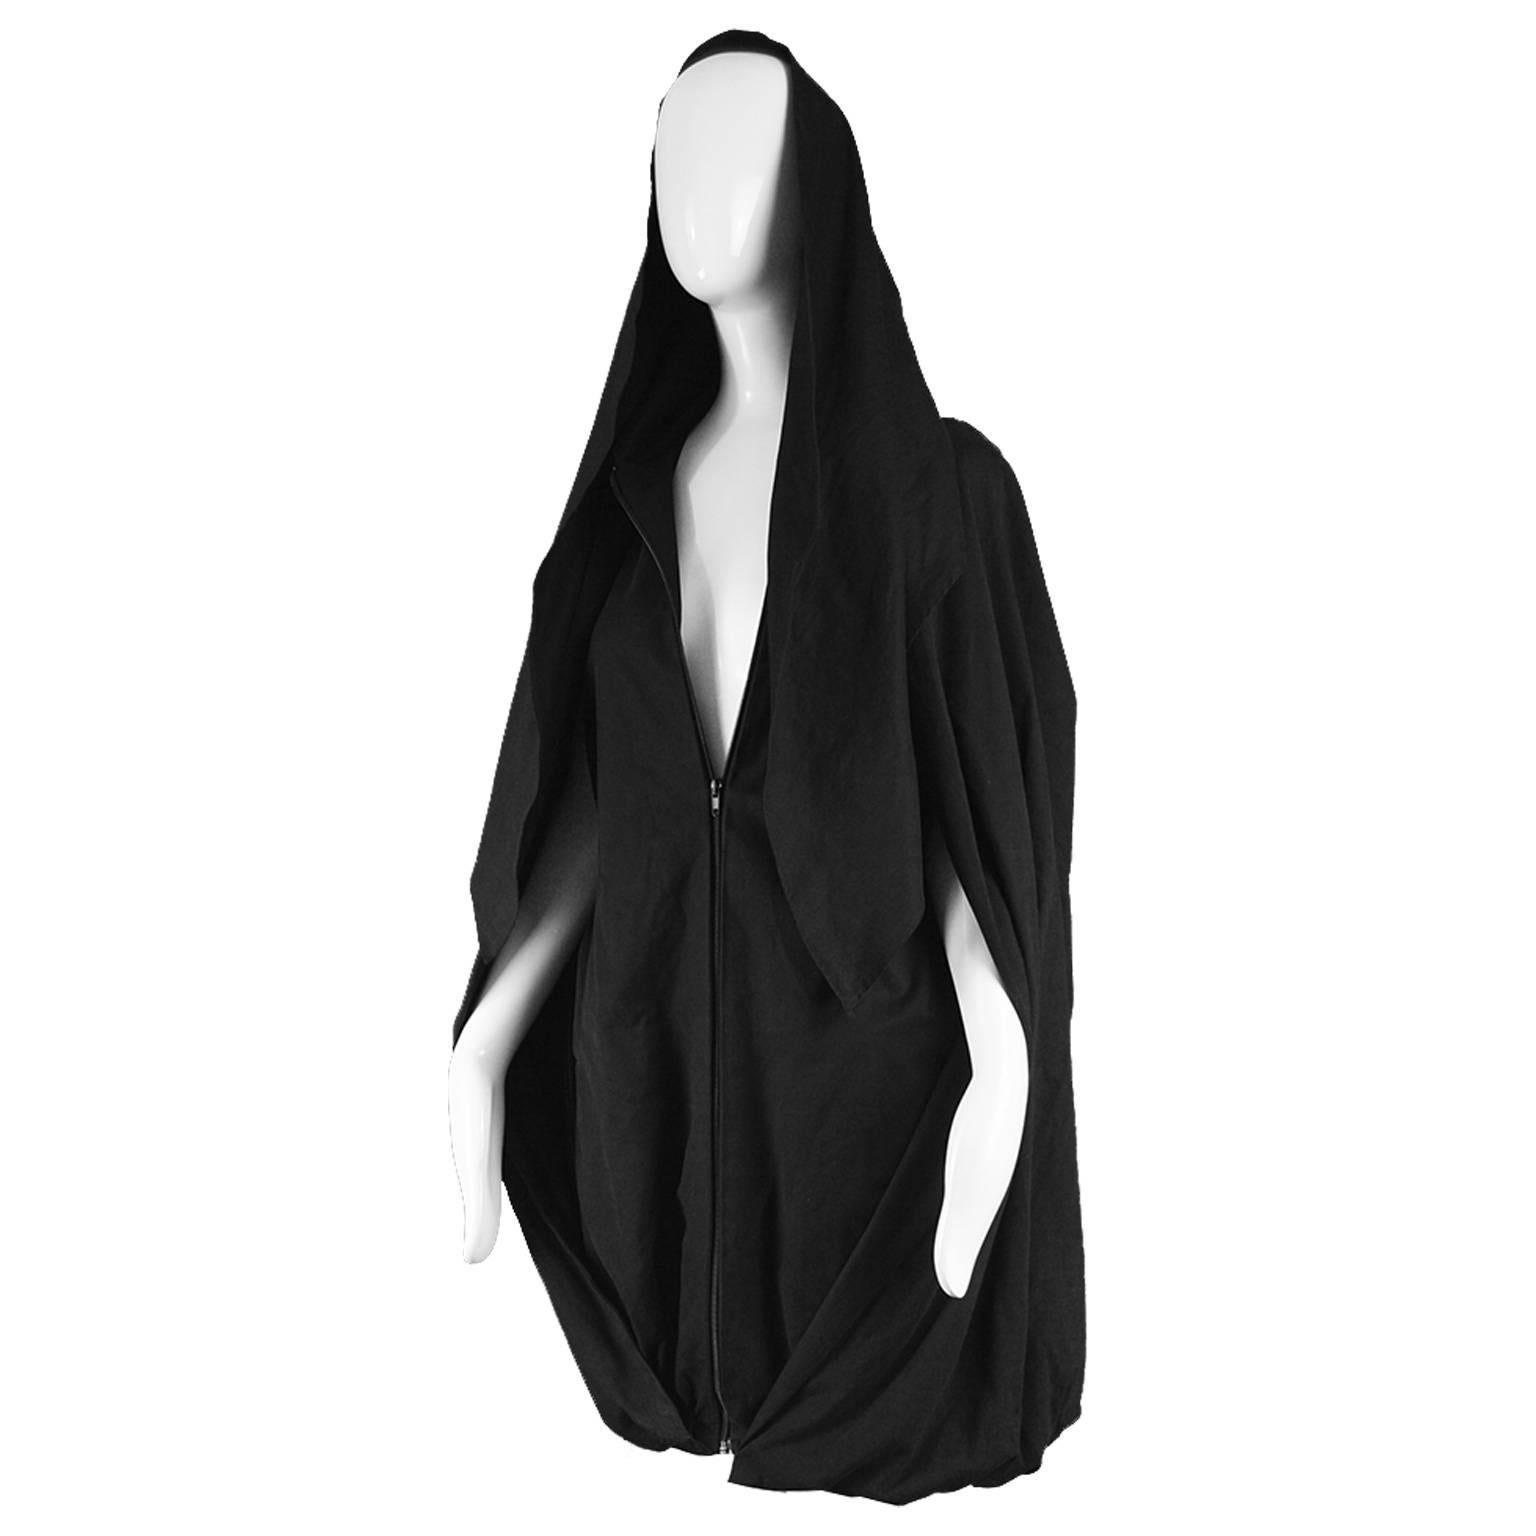 Sybilla Vintage 1980s Avant Garde Architectural Black Cape Coat Dress 